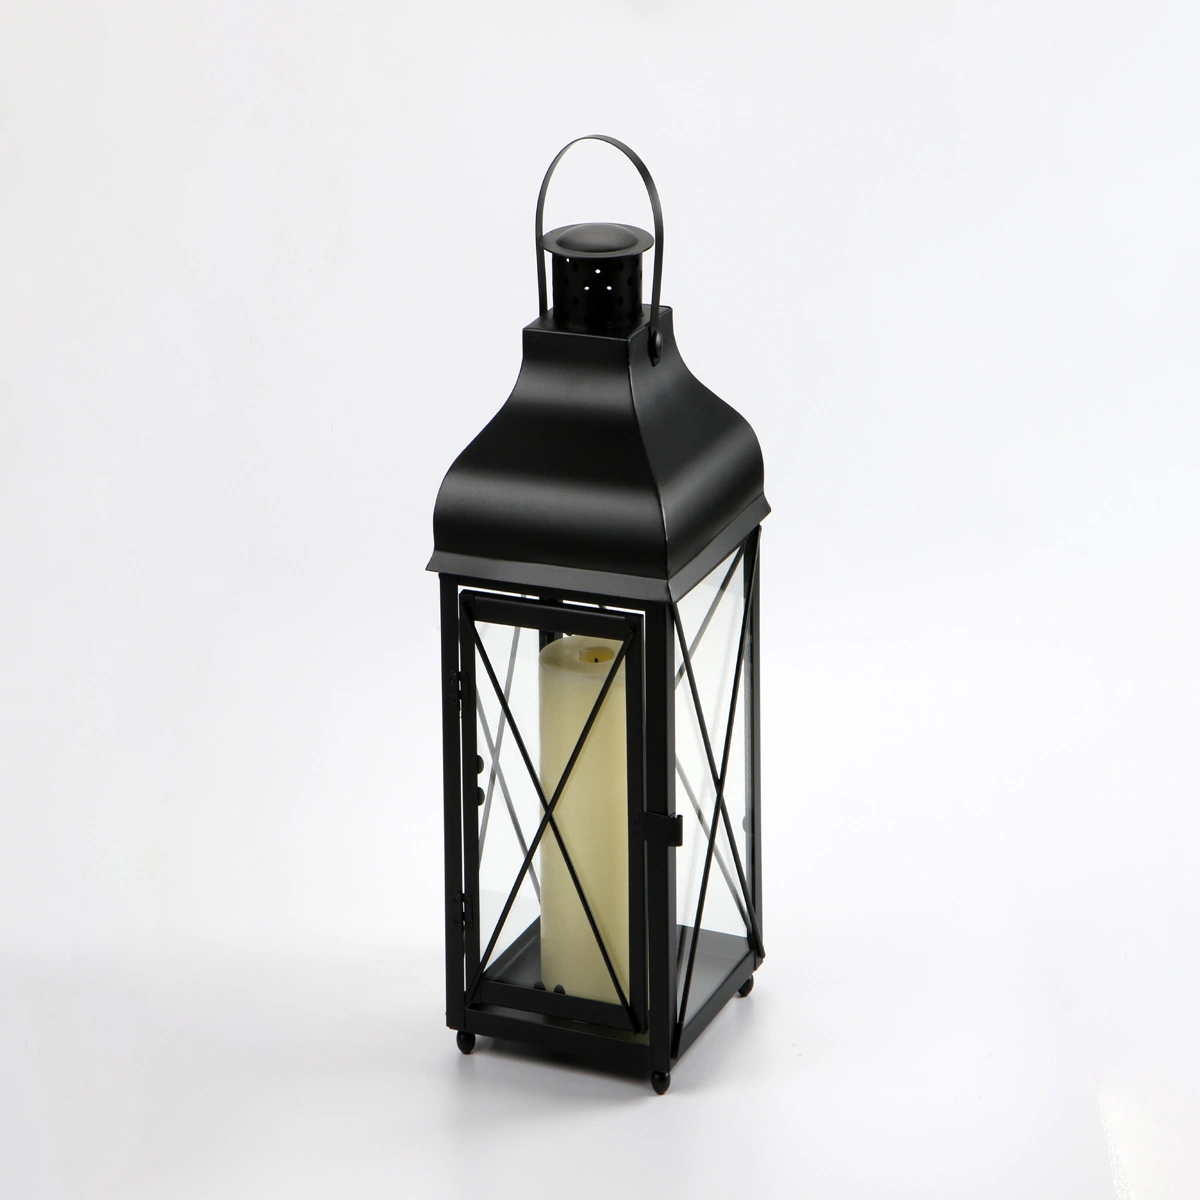 Lampe de table à personnalité créative, miroir croisé, style marocain exotique, décoration en fer forgé noir et blanc à deux couleurs, lanterne décorative pour la maison la nuit.